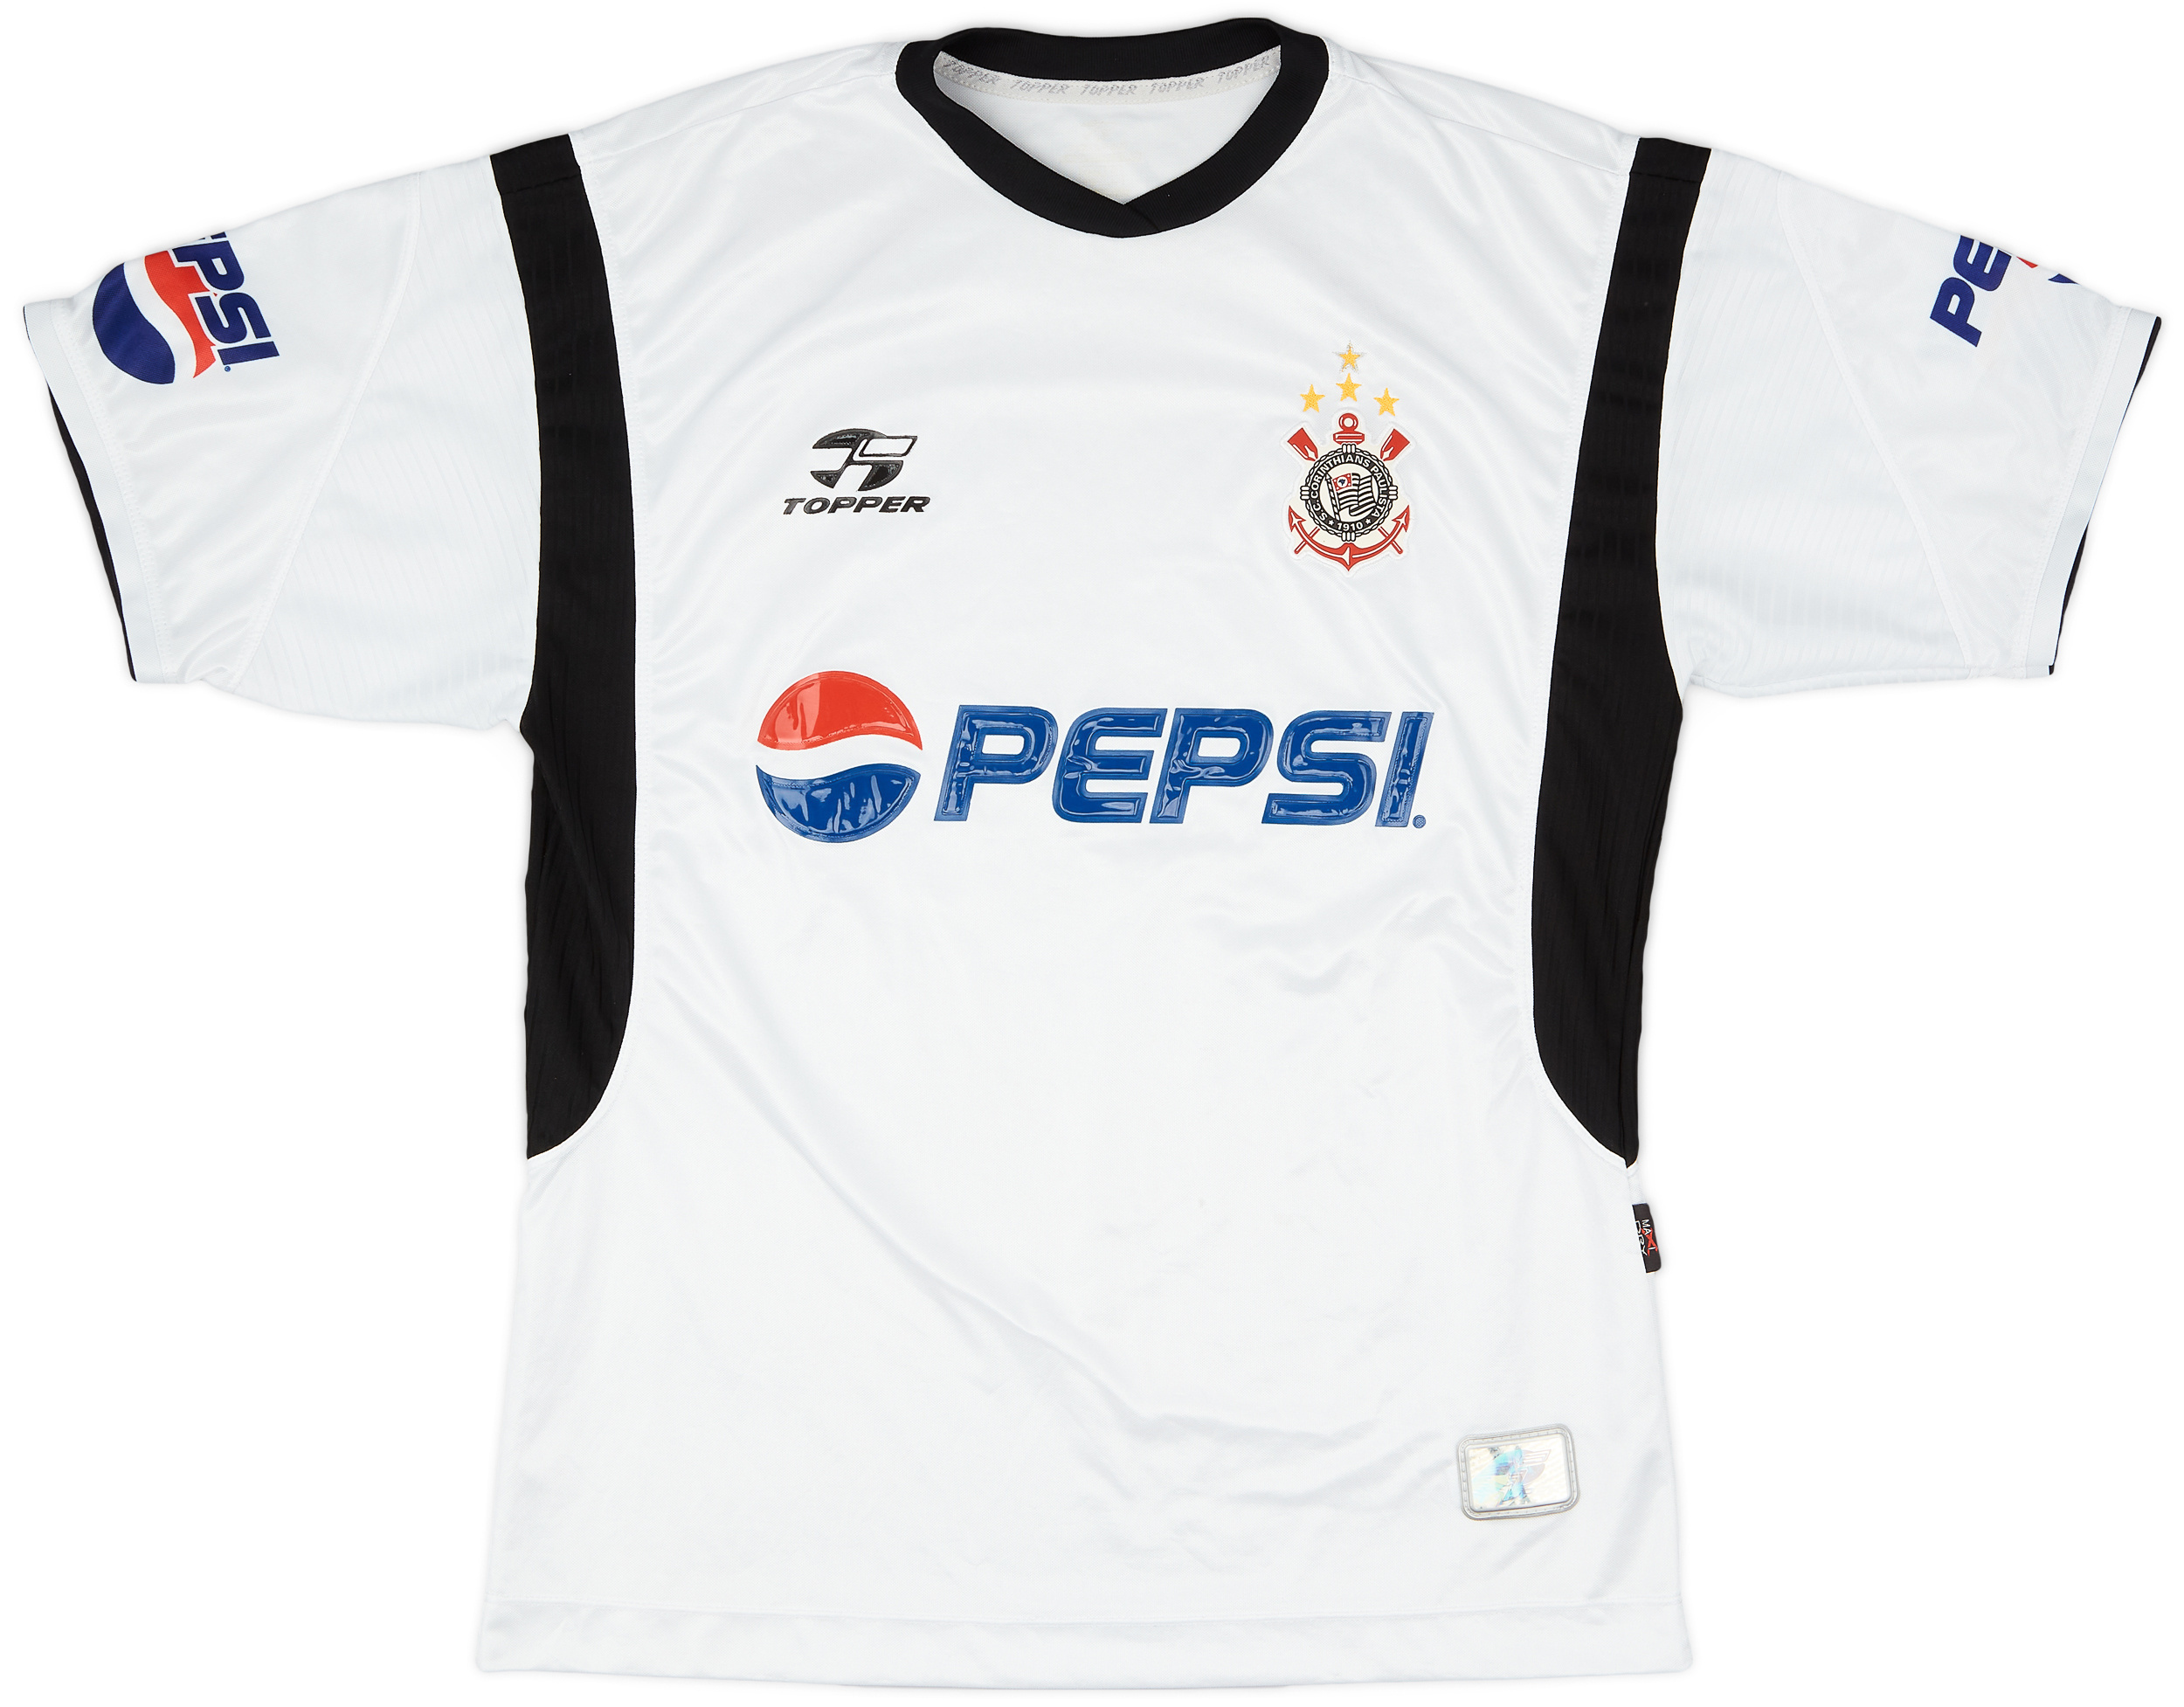 Corinthians  home Camiseta (Original)